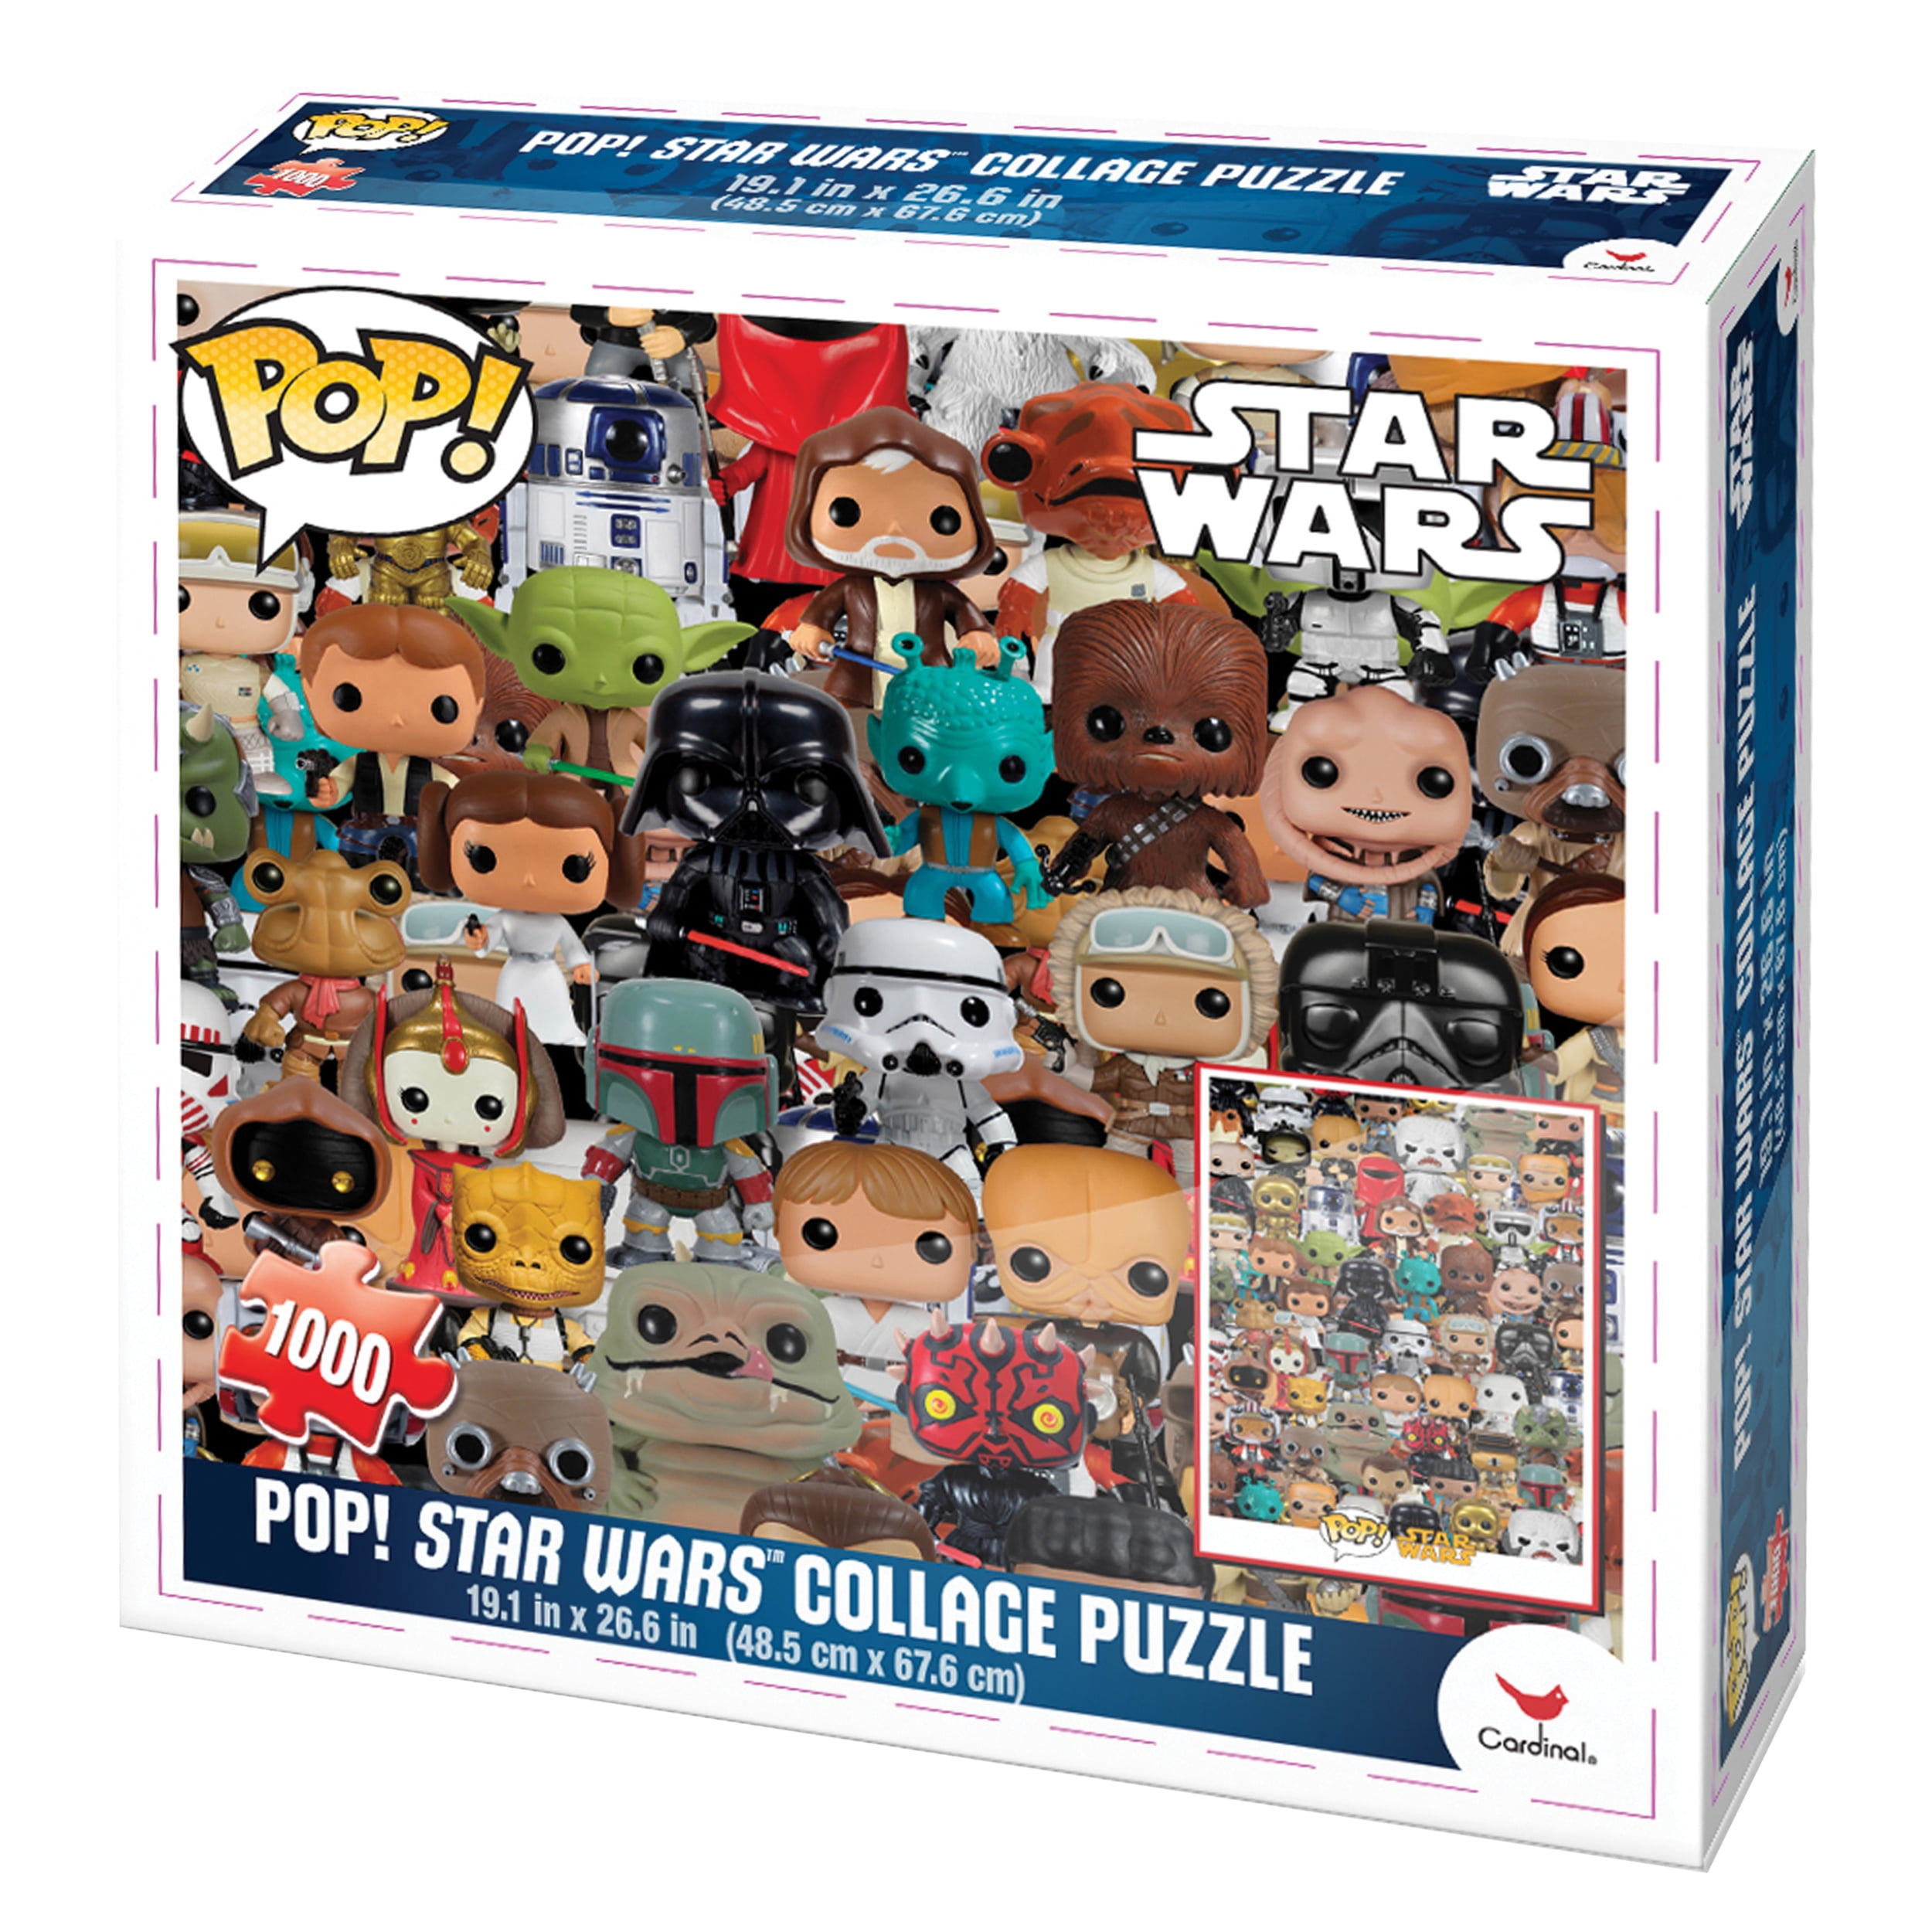 Star Wars Funko Pop! Collage 1000 Piece Puzzle - Walmart.com